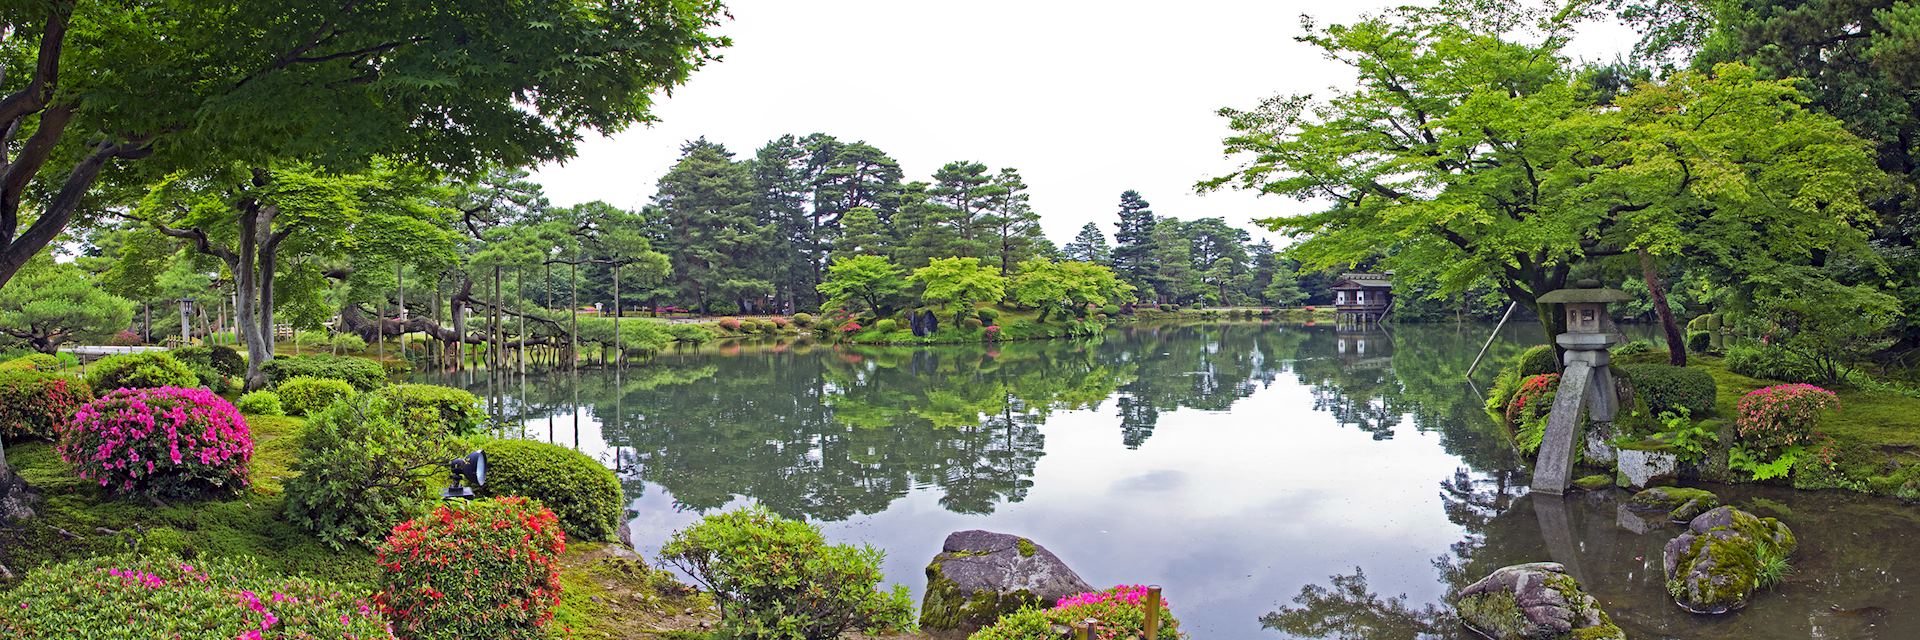 Kenrokuen garden